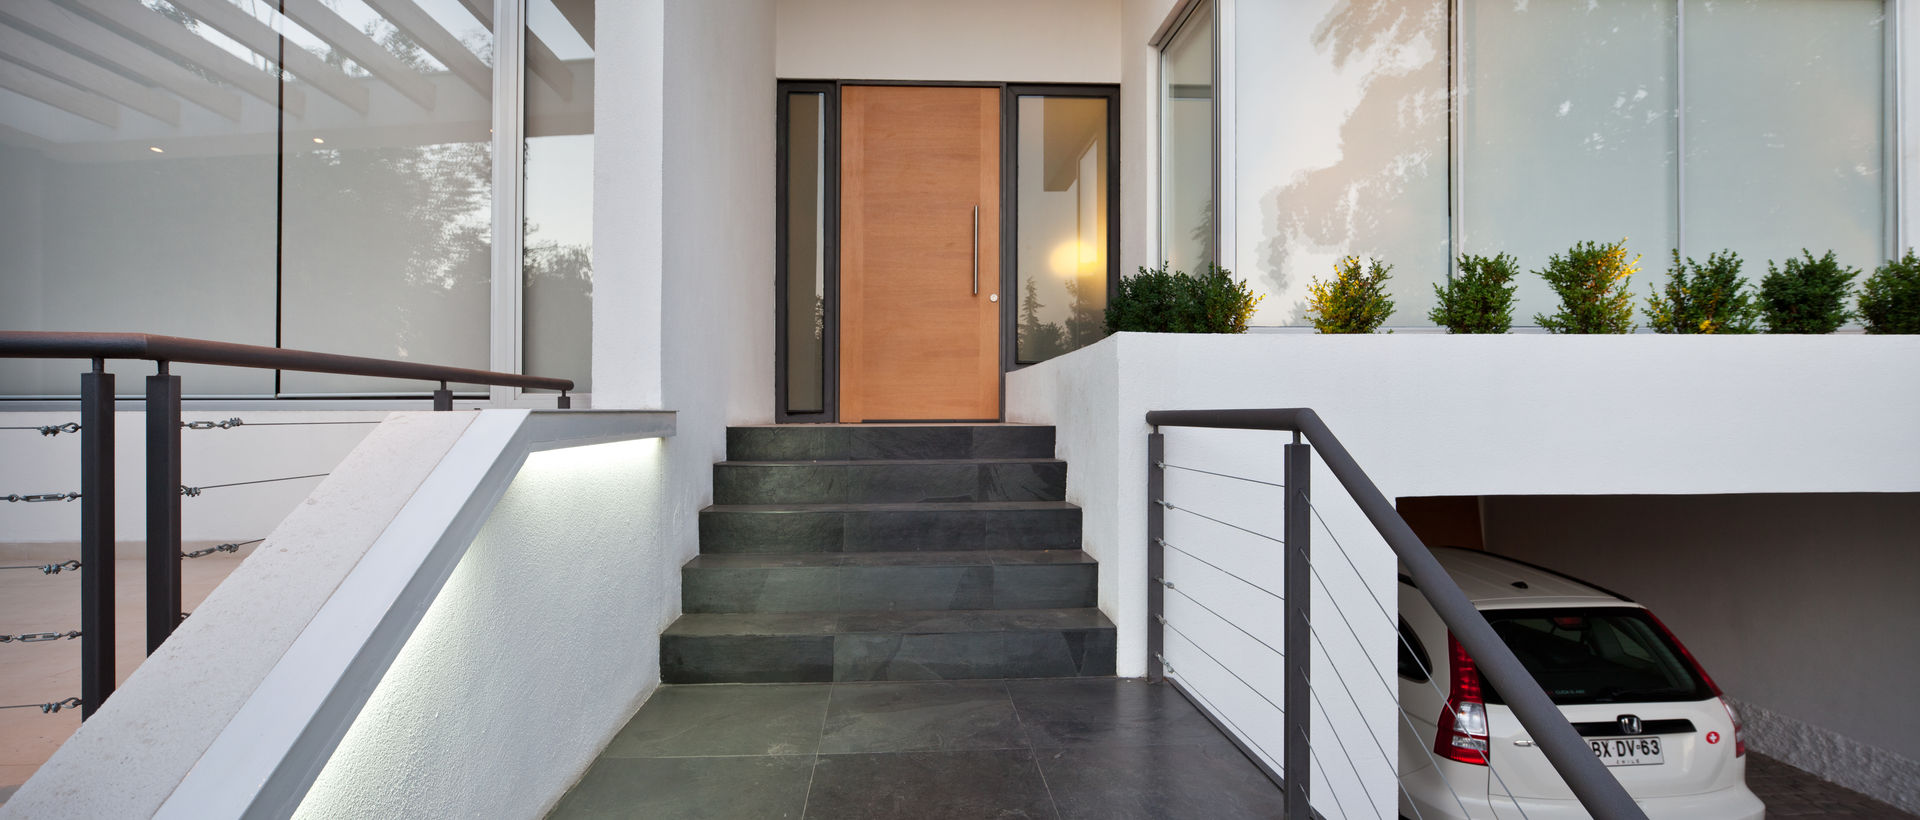 Puerta de acceso [ER+] Arquitectura y Construcción Pasillos, halls y escaleras minimalistas